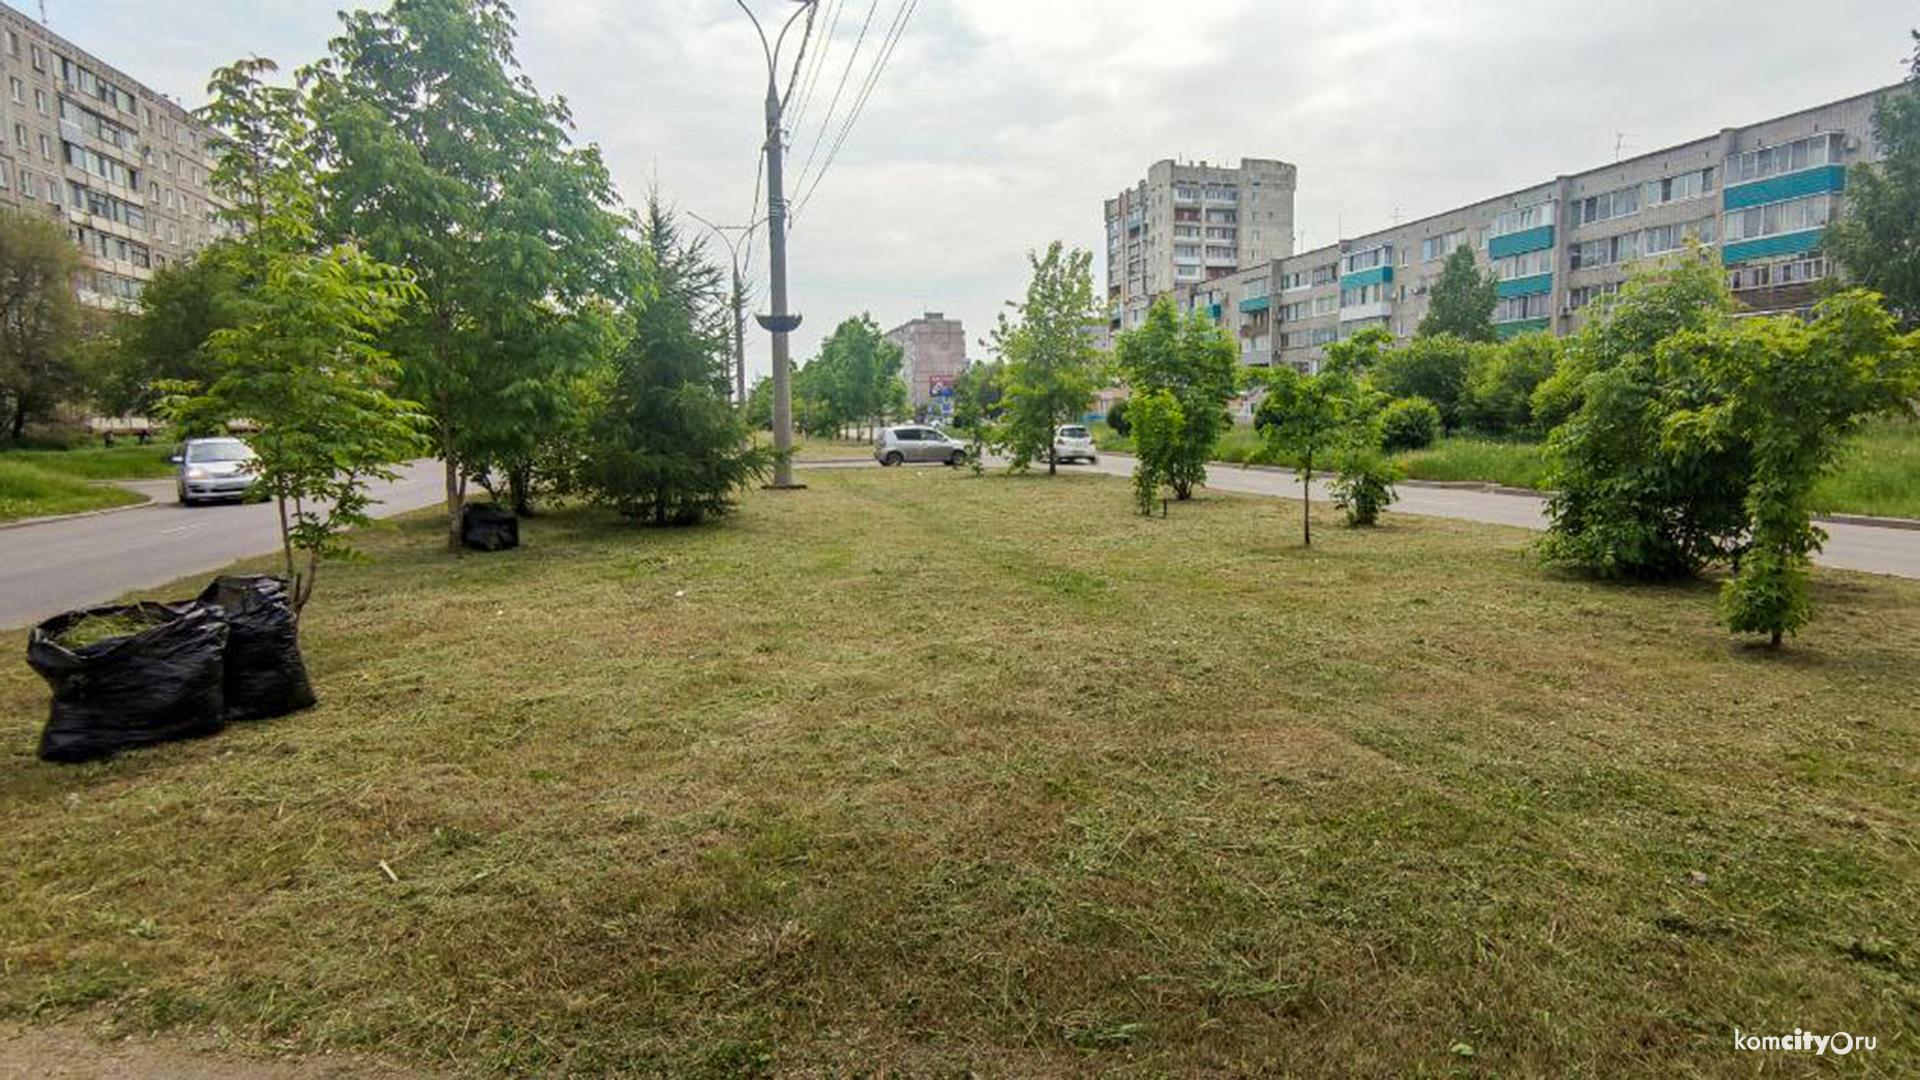 Судебный спор о траве завершился провалом администрации Комсомольска-на-Амуре